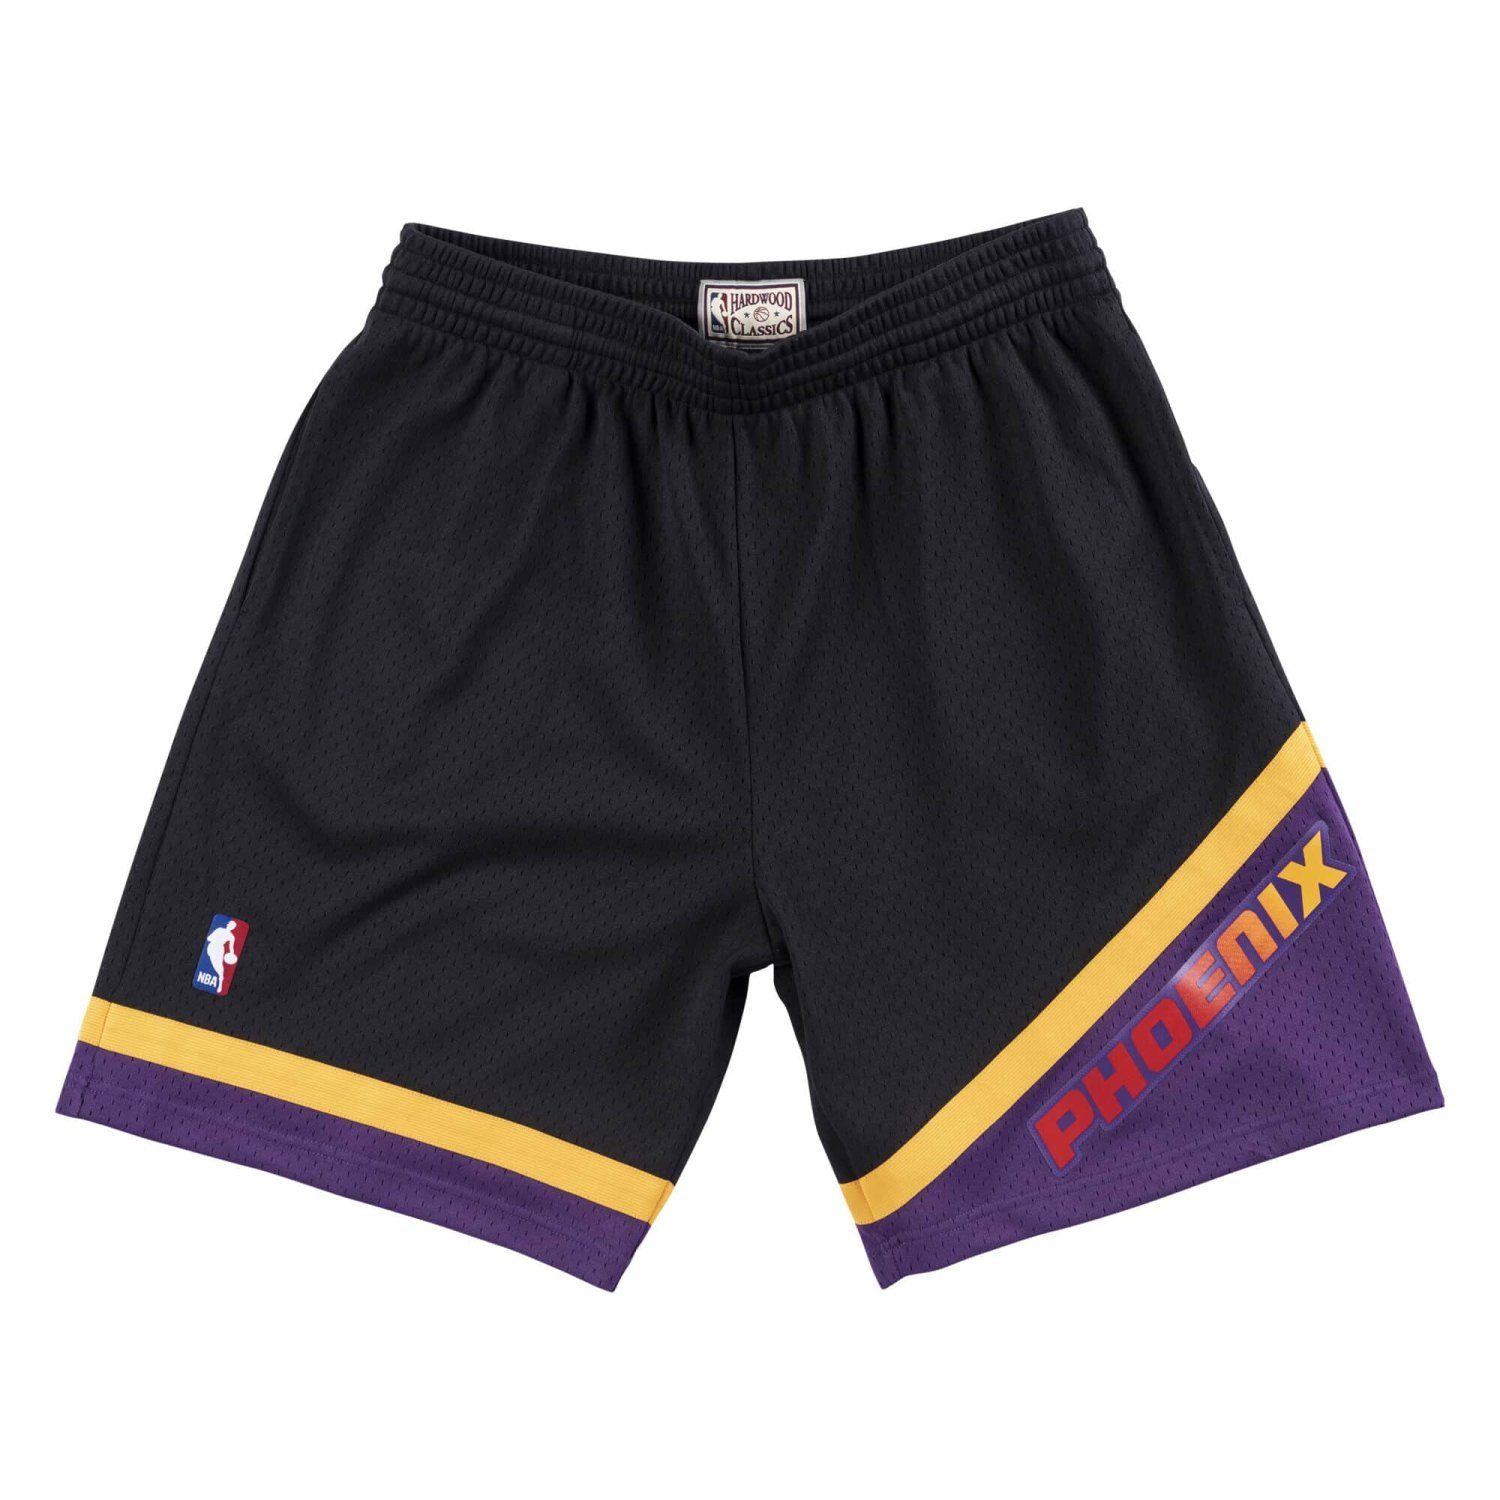 Mitchell & Ness Shorts NBA Swingman Phoenix Suns Alternate 199900